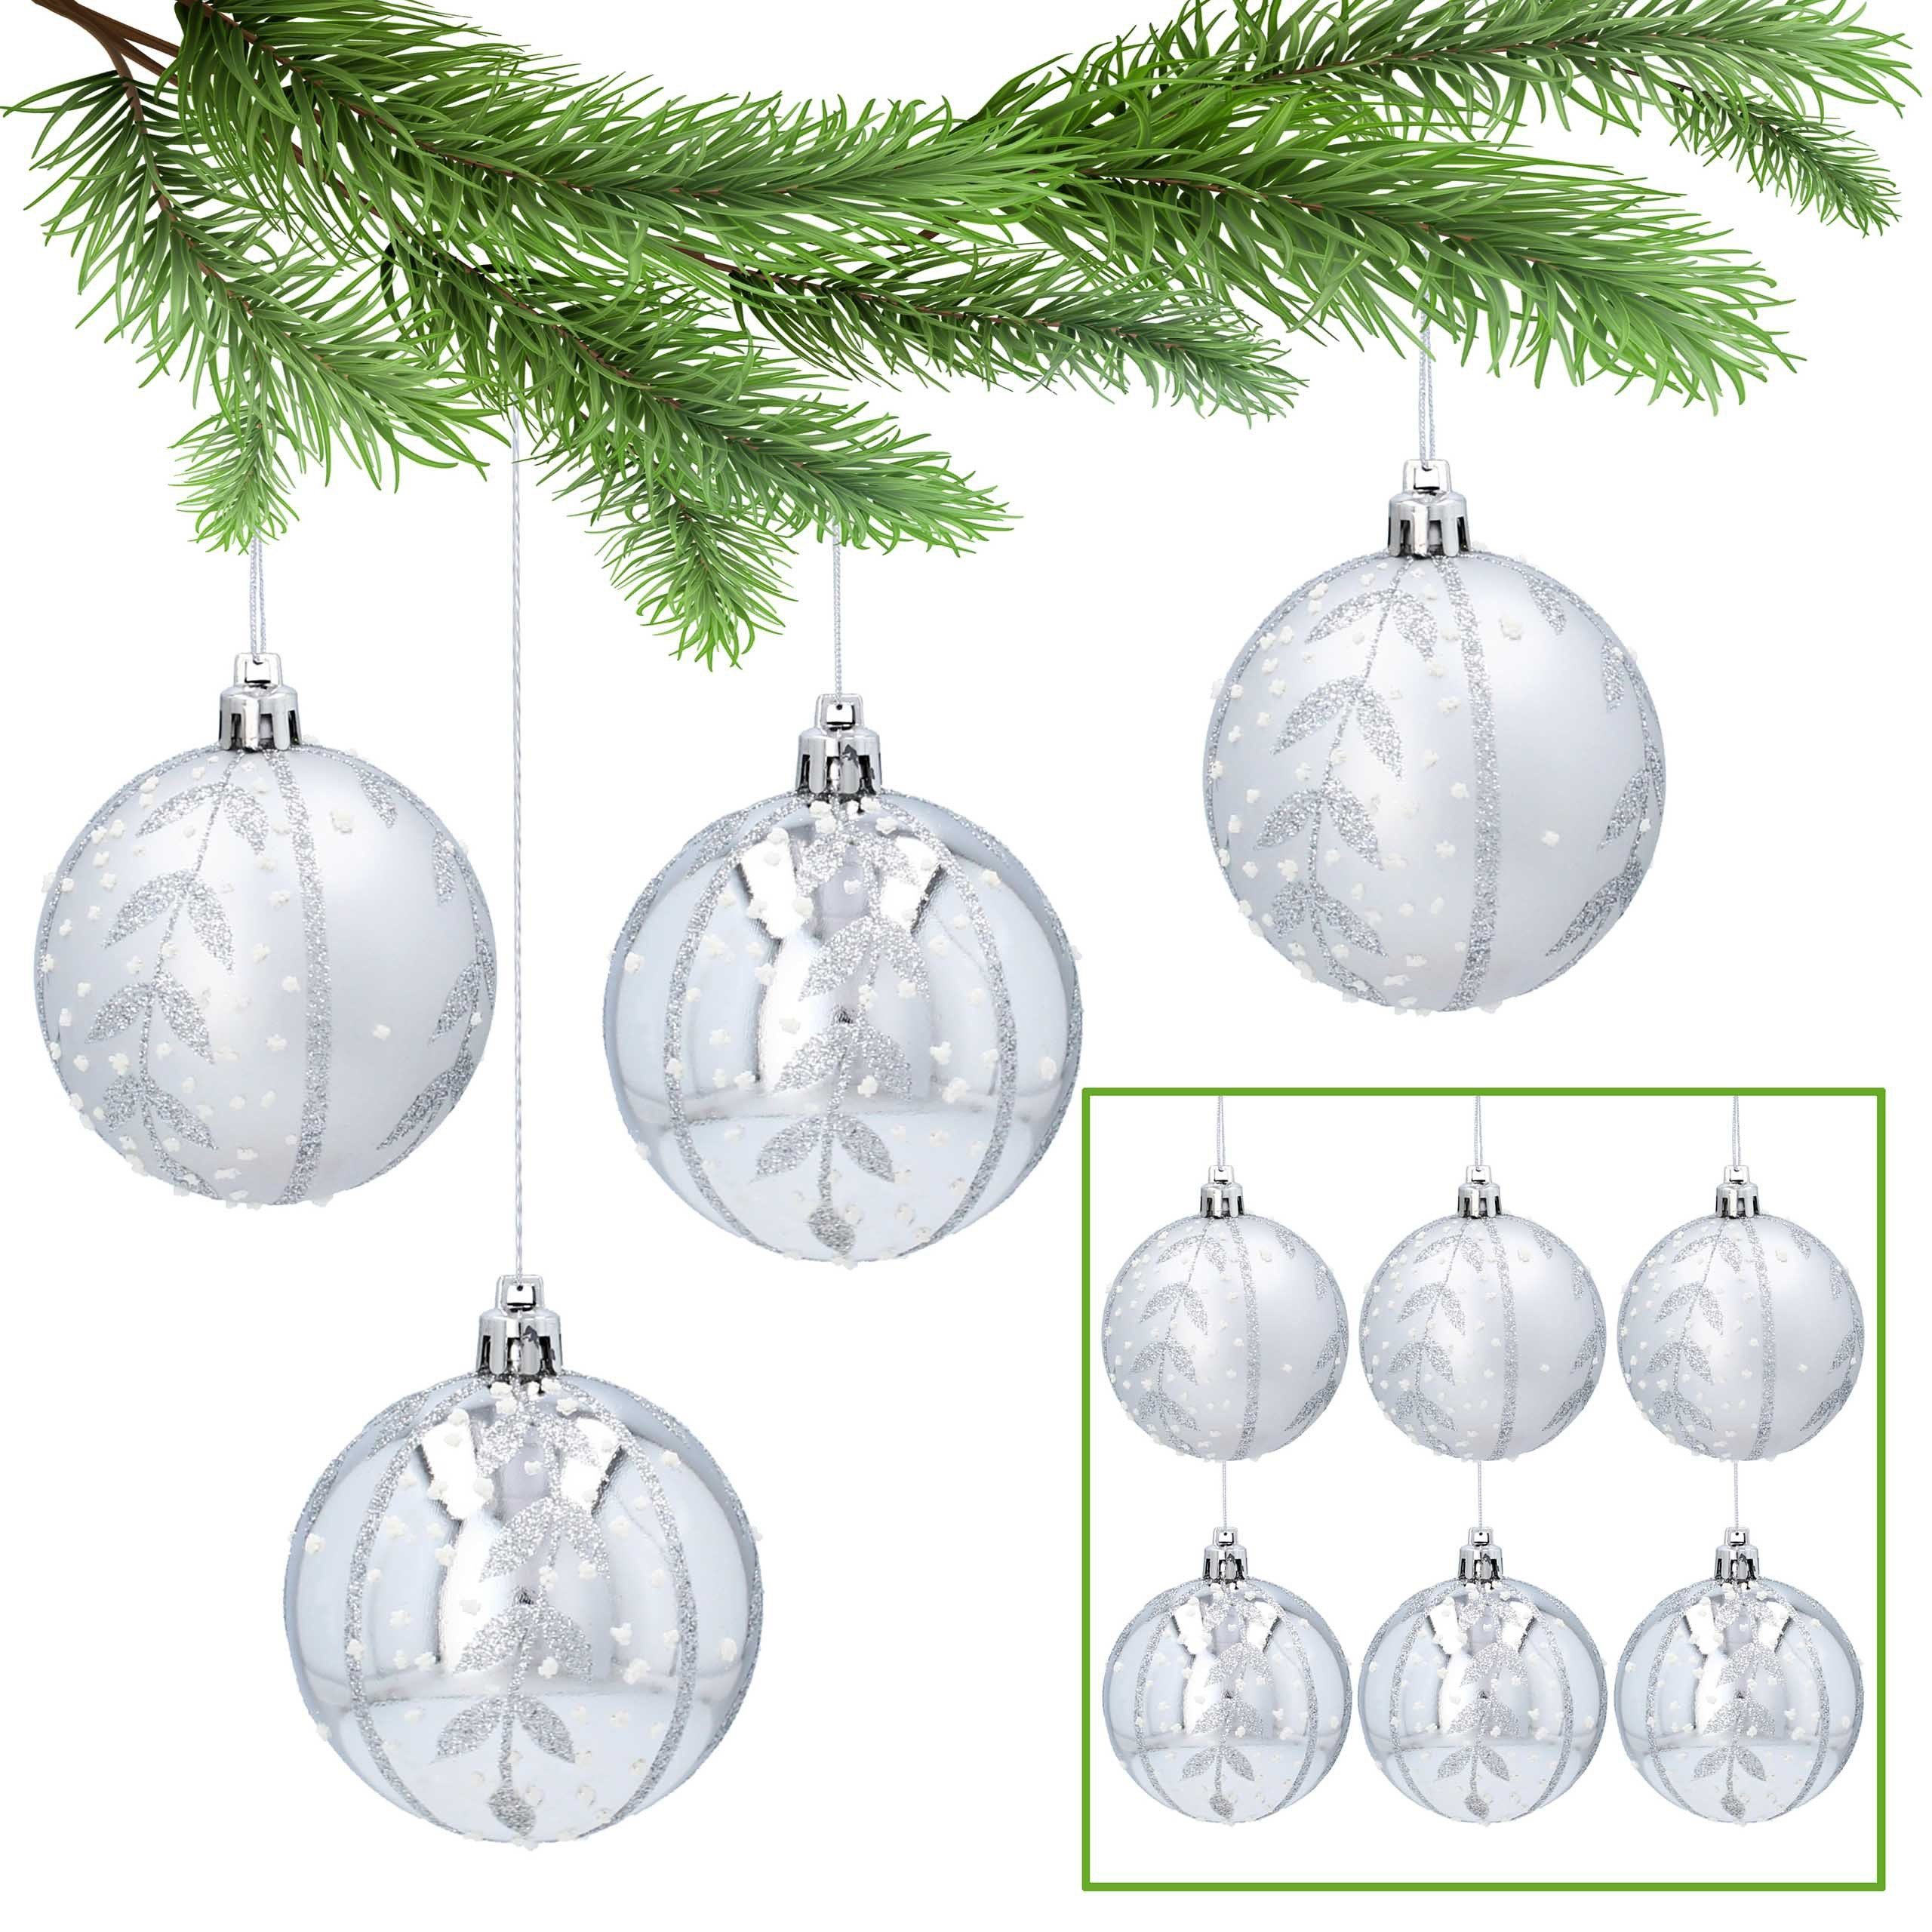 Sarcia.eu Weihnachtsbaumkugel Silberne kugeln mit Glitzter aus Kunststoff 7cm, 6Stück 1Pack